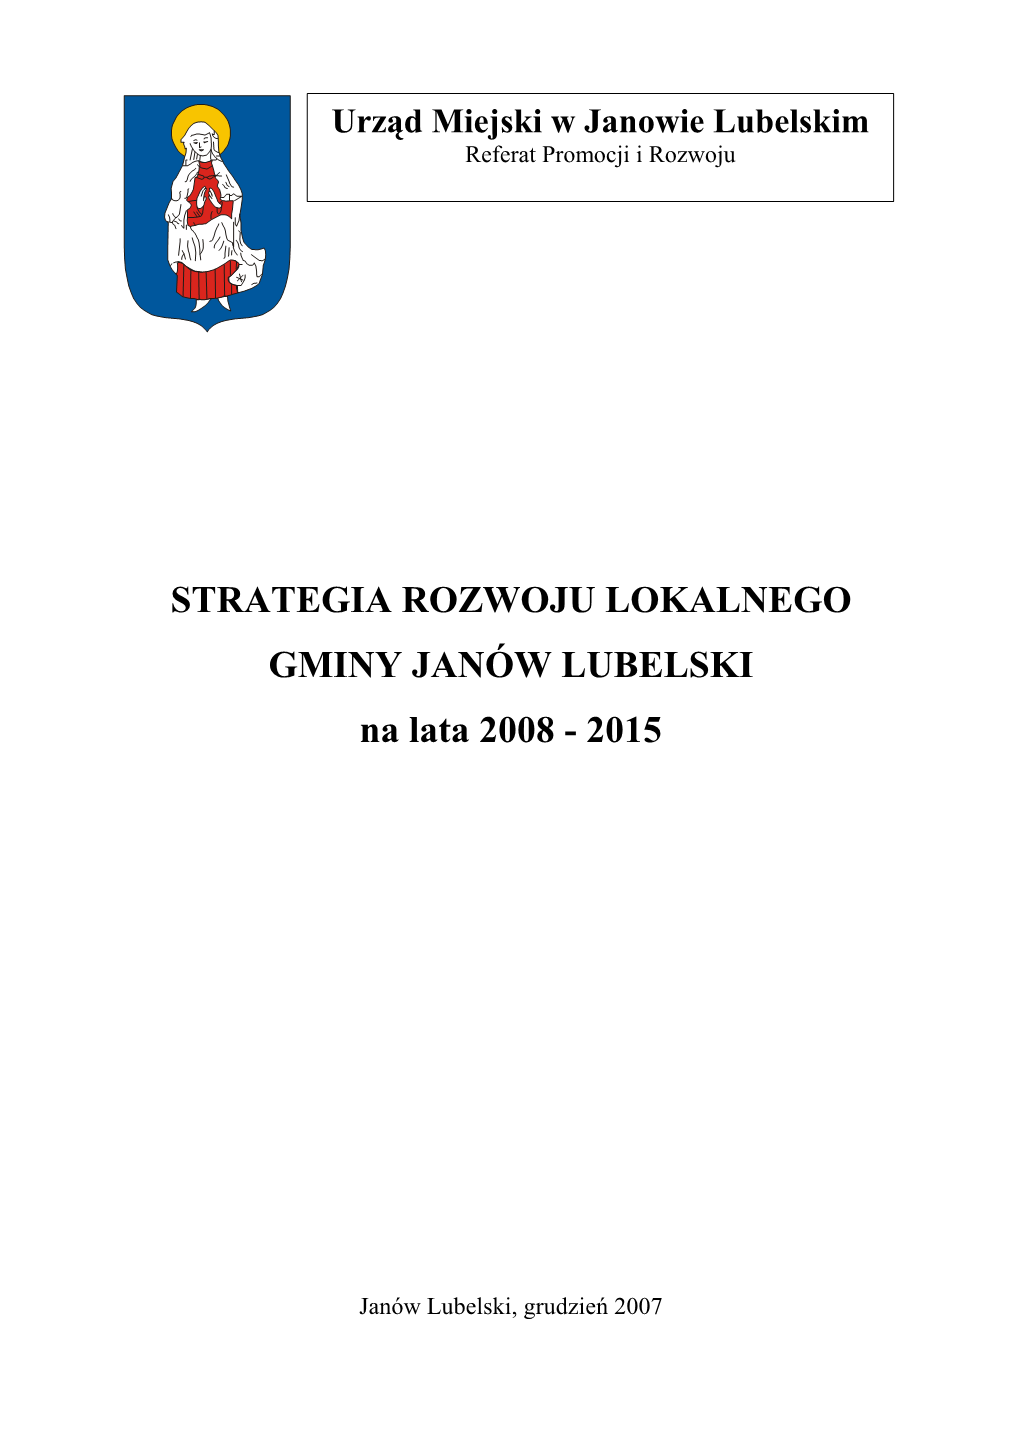 STRATEGIA ROZWOJU LOKALNEGO GMINY JANÓW LUBELSKI Na Lata 2008 - 2015